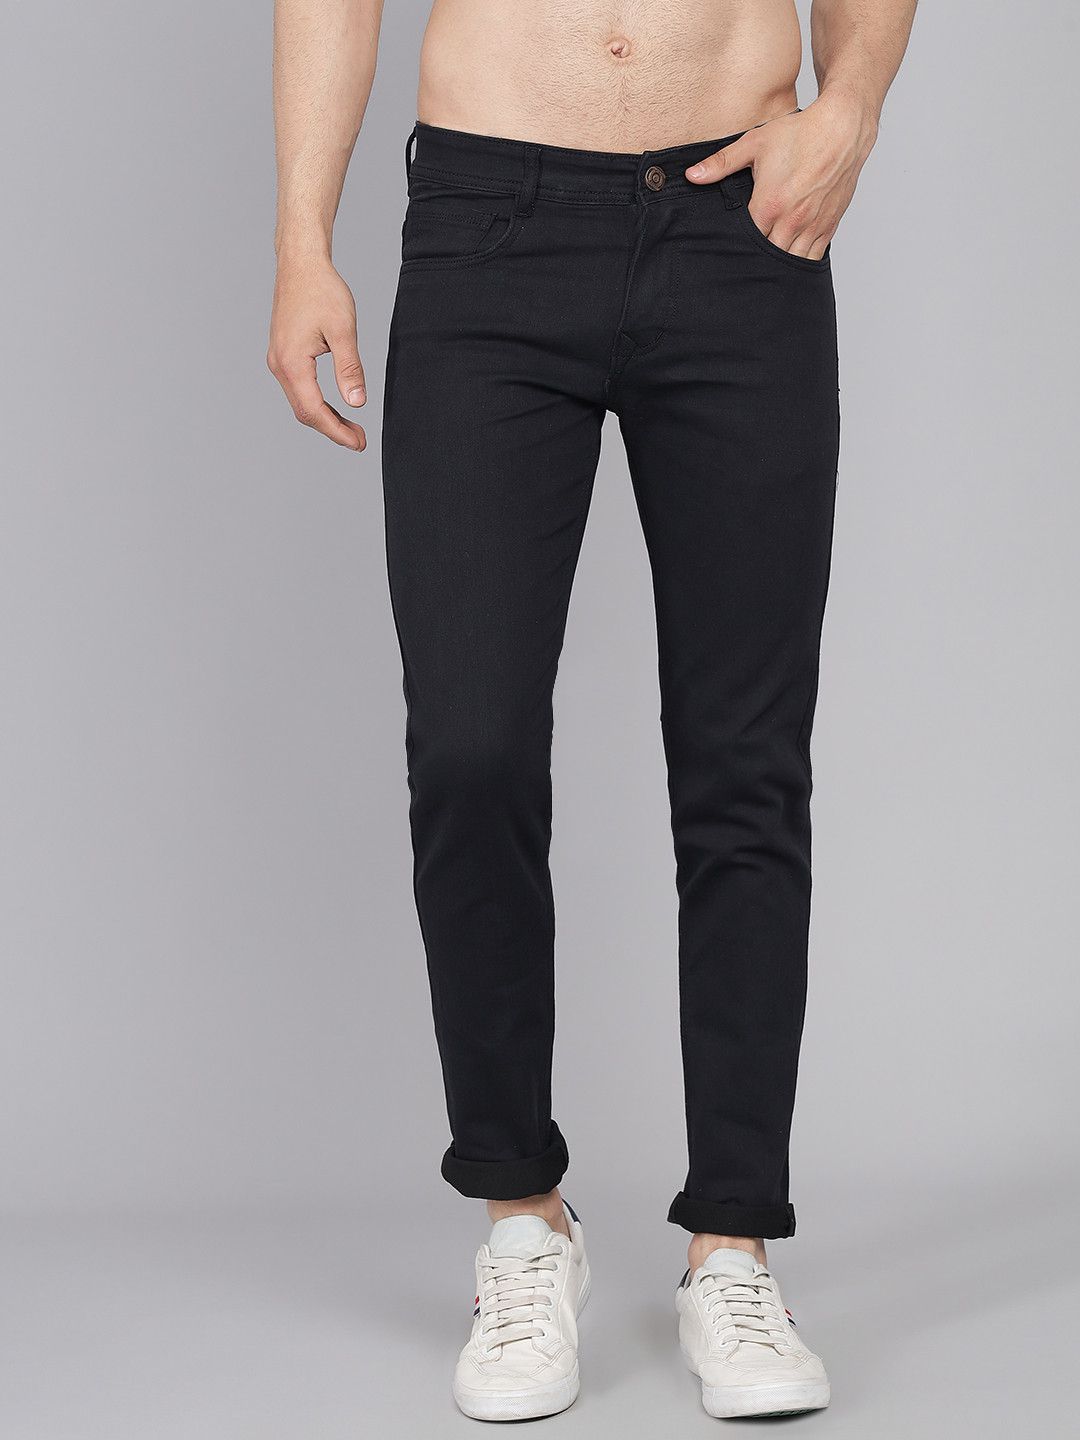 PODGE - Black Denim Slim Fit Men's Jeans ( Pack of 1 )